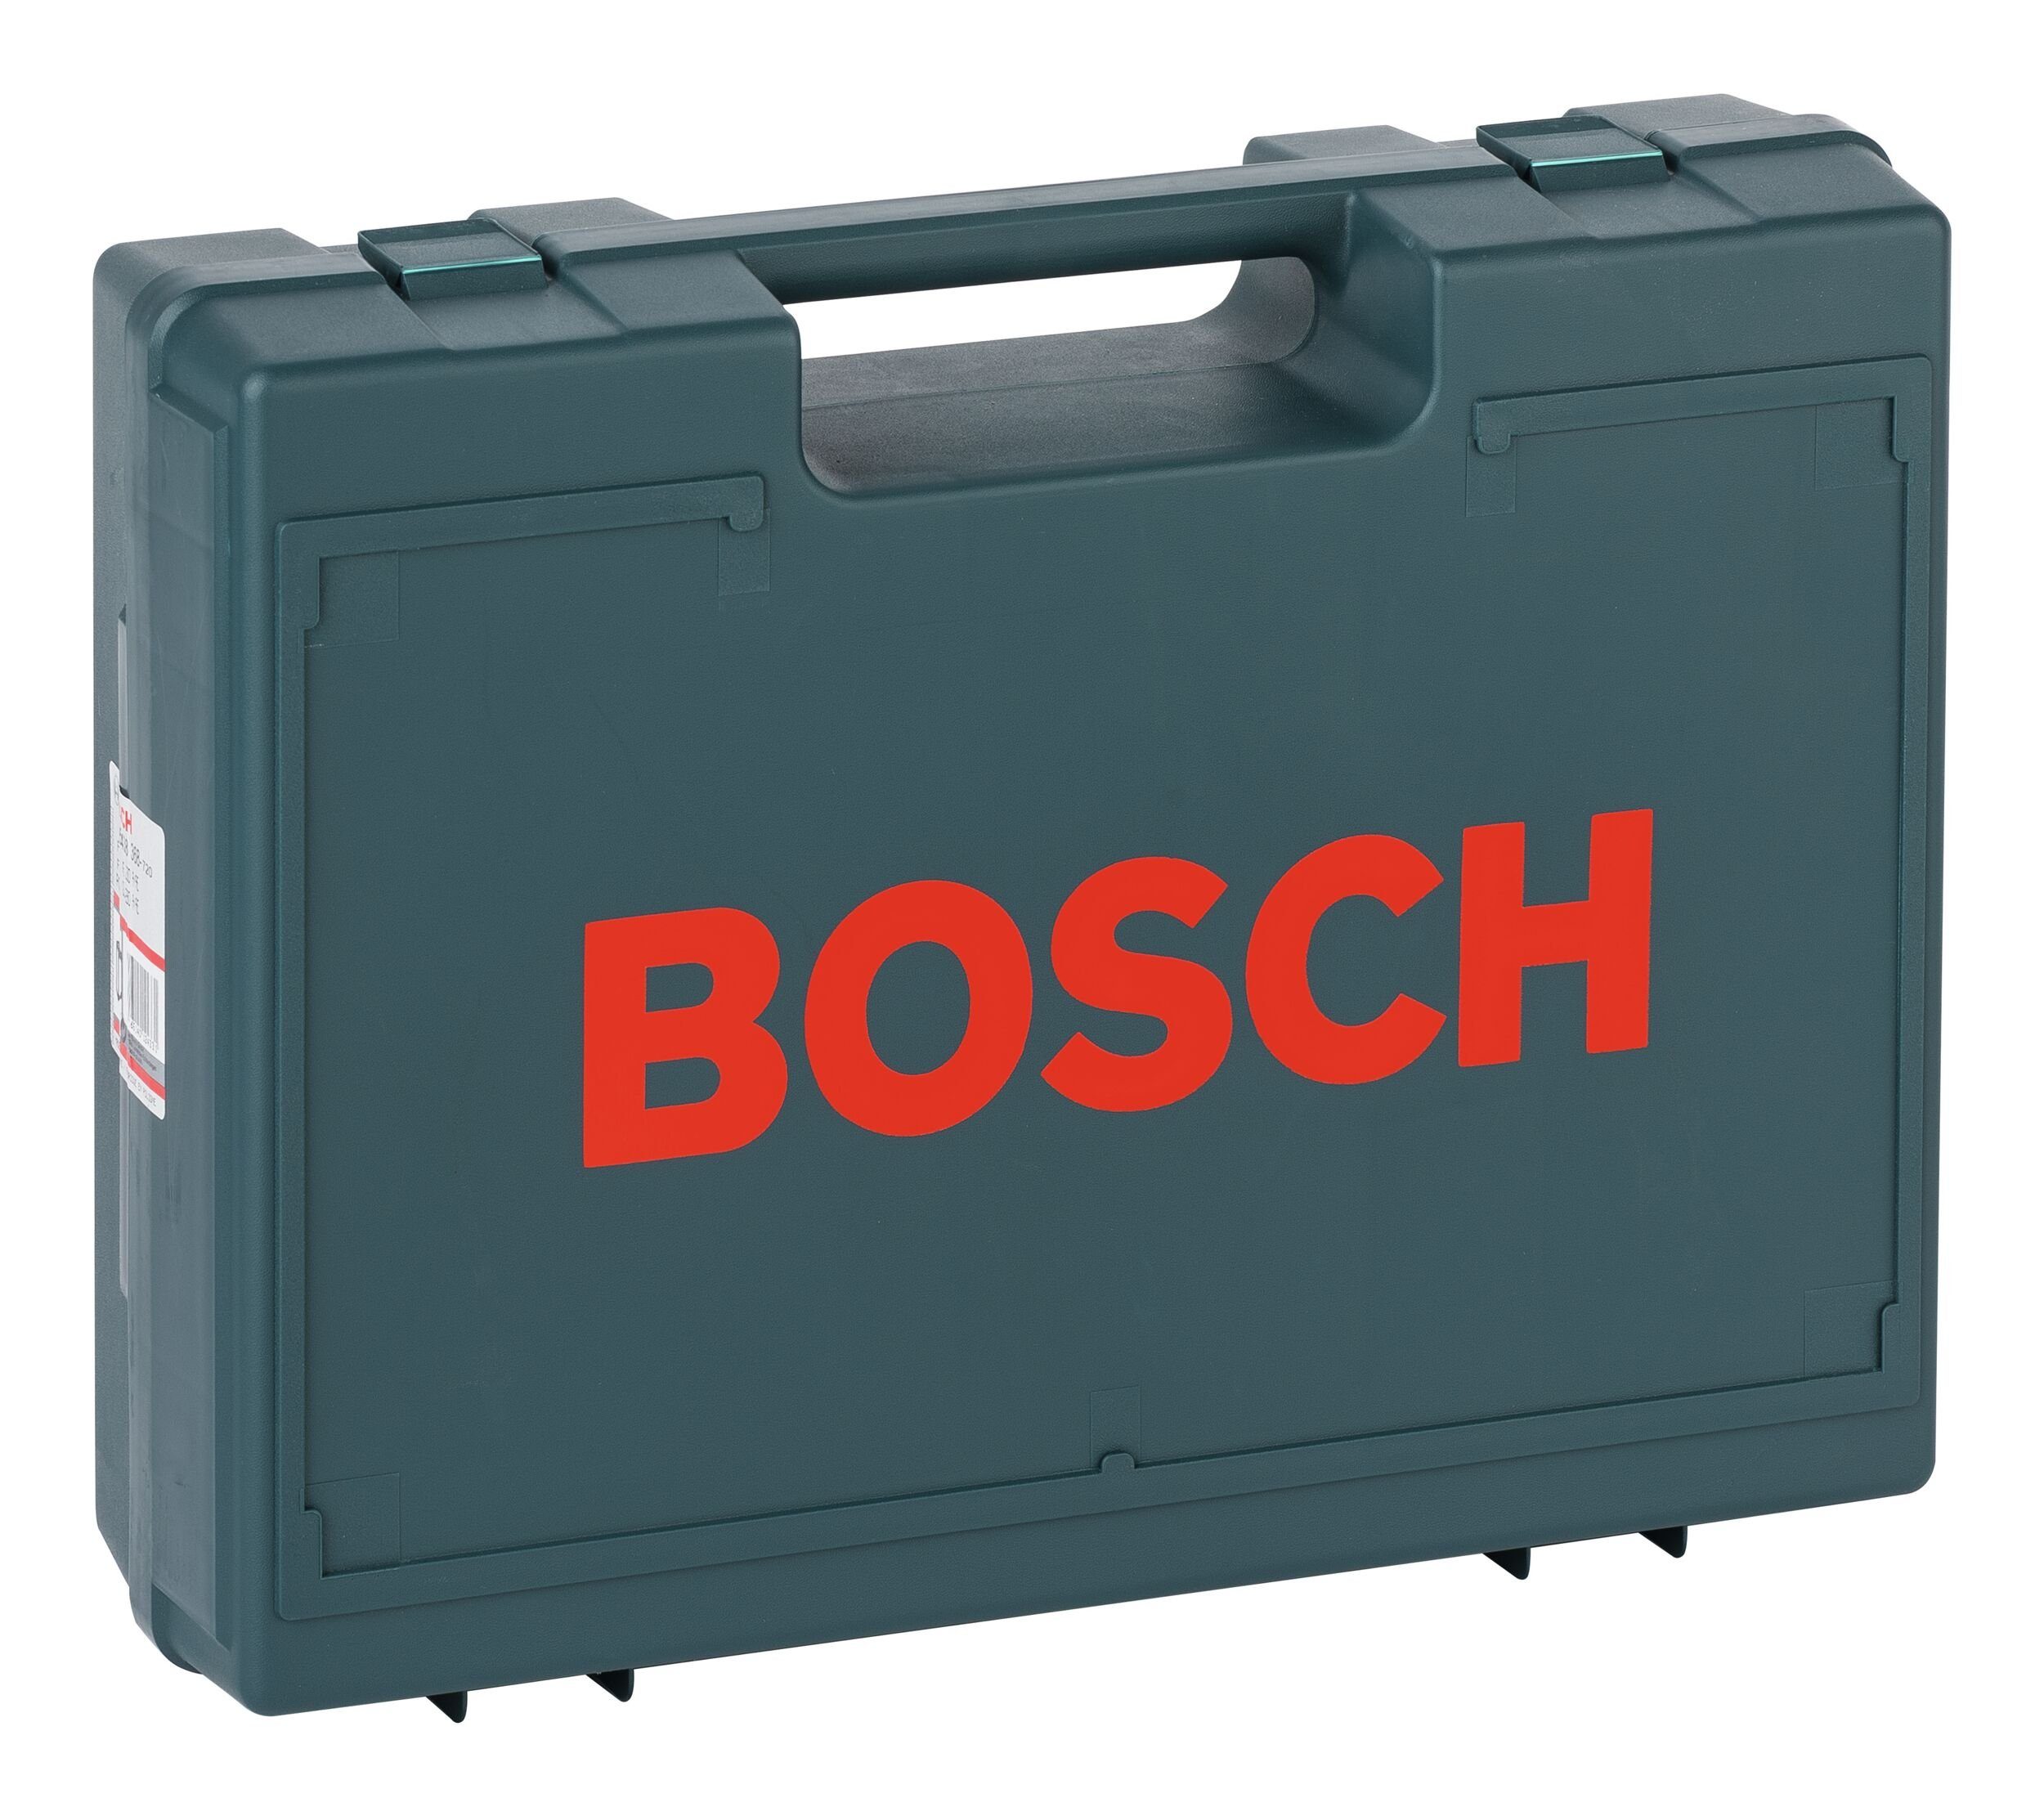 Home 130 Bosch & mm 330 x Werkzeugkoffer, x 420 - Garden Kunststoffkoffer